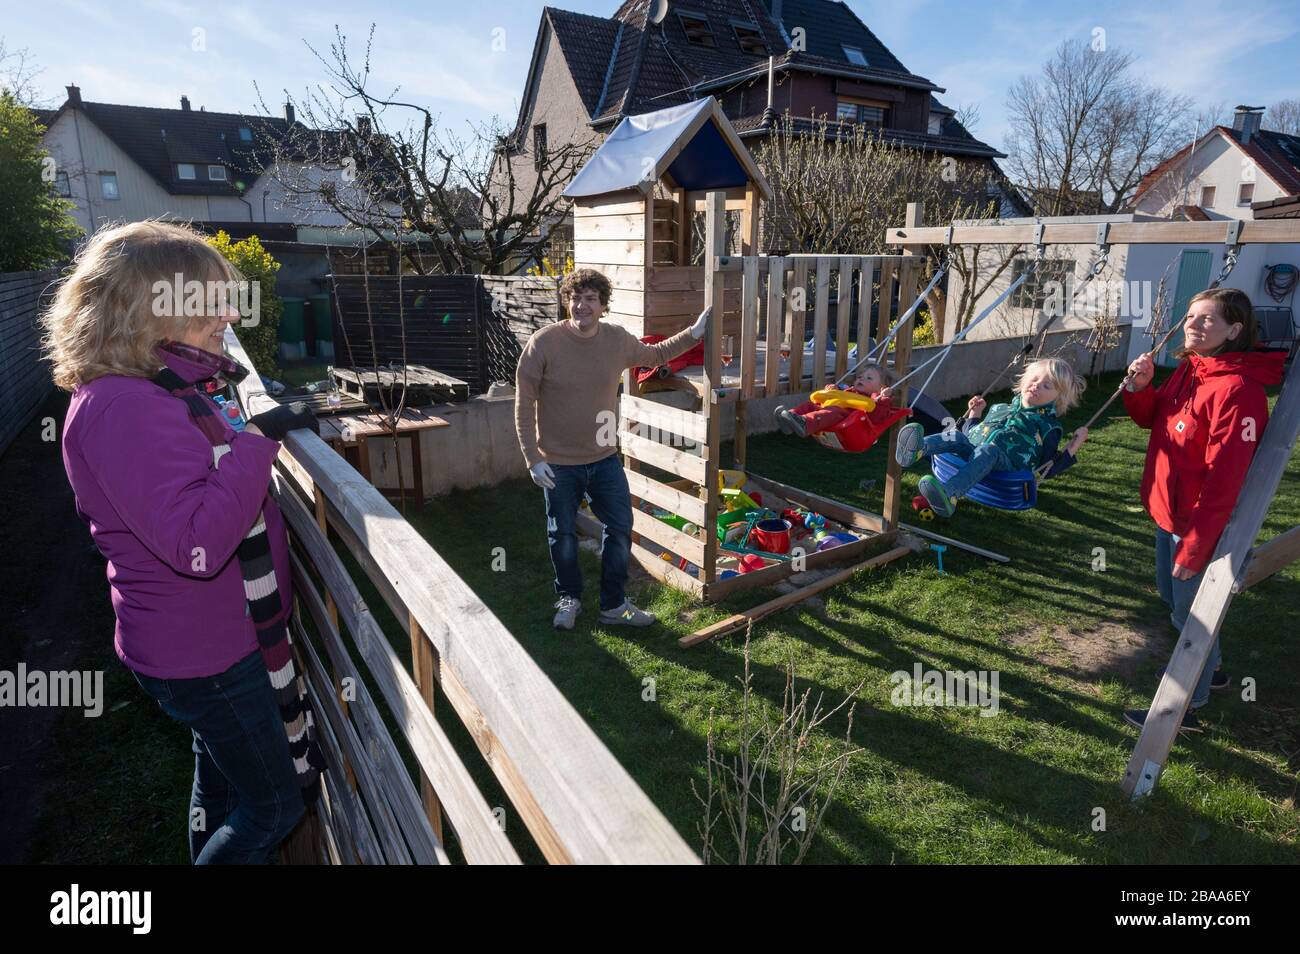 Distanciamiento social: Una abuela (izquierda) vino a una valla de jardín durante la pandemia del coronavirus para visitar a sus dos nietos mientras mantenía cierta distancia Foto de stock